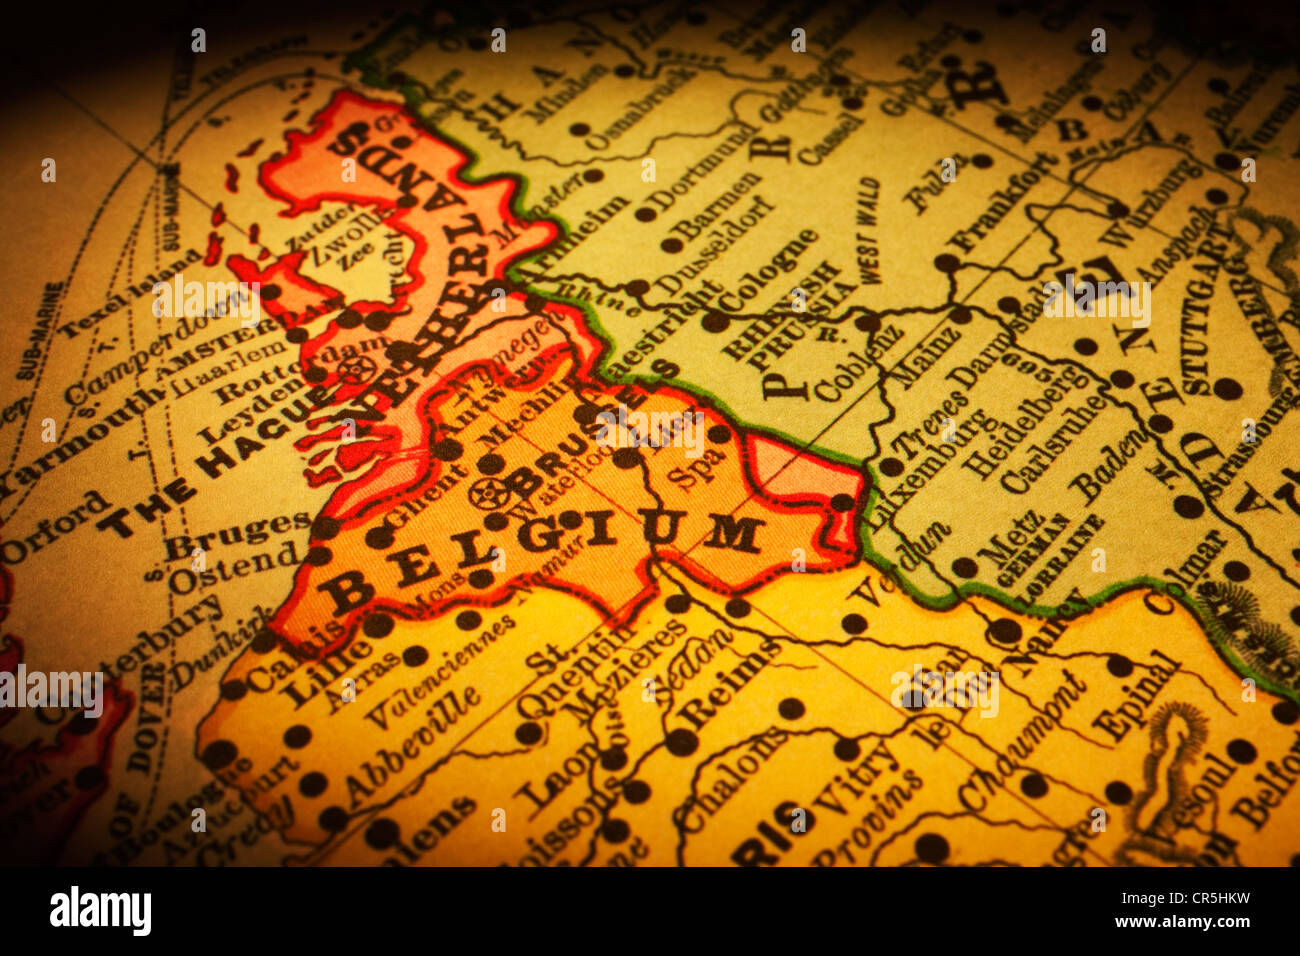 Mappa vecchia del Belgio e la sua posizione in Europa. Mappa è dal 1894 ed è al di fuori del diritto d'autore. Foto Stock